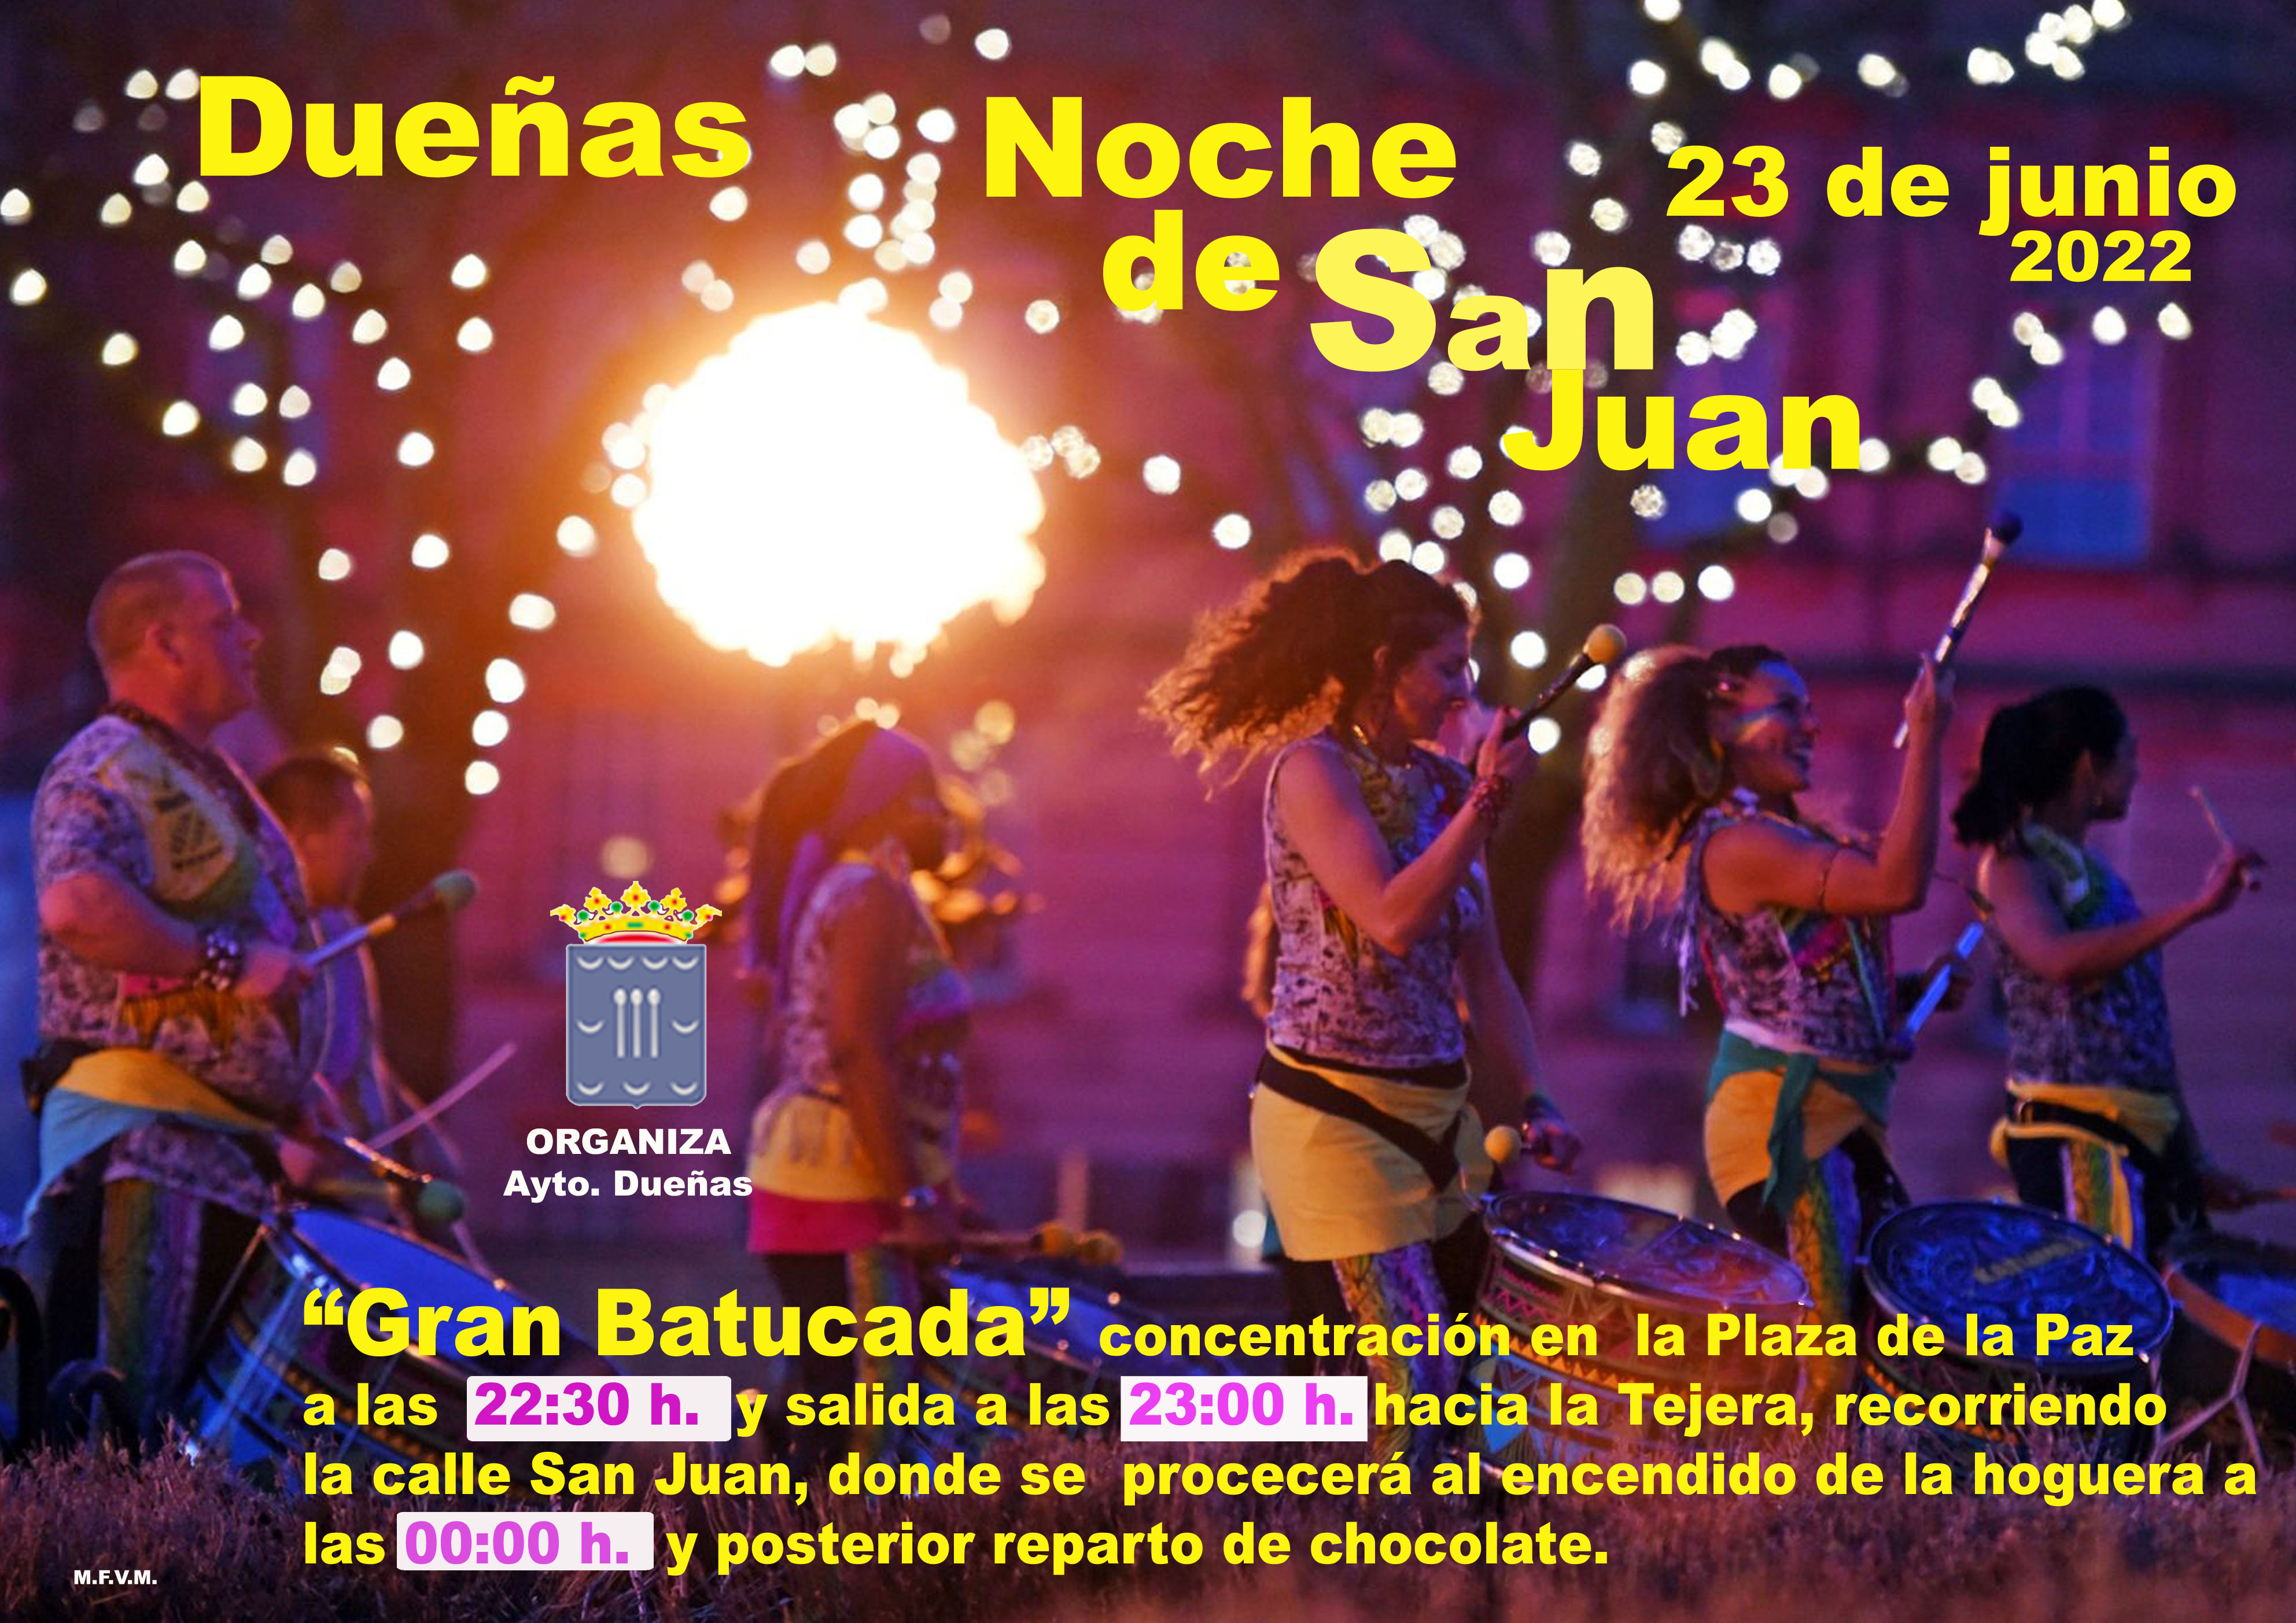 23 de junio de 2022: Noche de San Juan, desde la Plaza de La Paz hasta la Tejera.